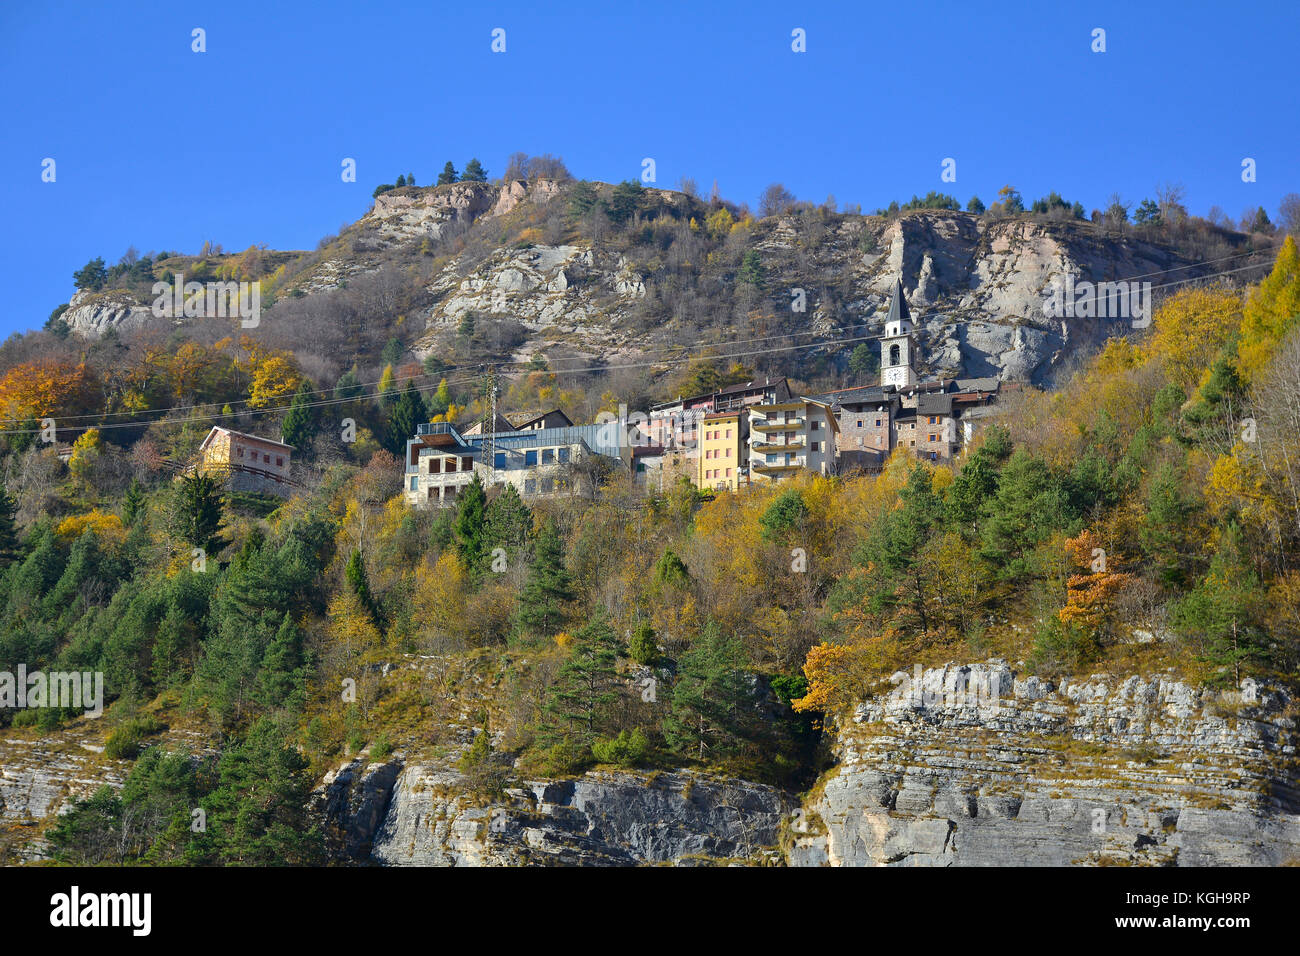 Le paysage d'automne autour de la petite colline de casso village dans la région de Frioul-Vénétie julienne, au nord-est de l'Italie. Banque D'Images